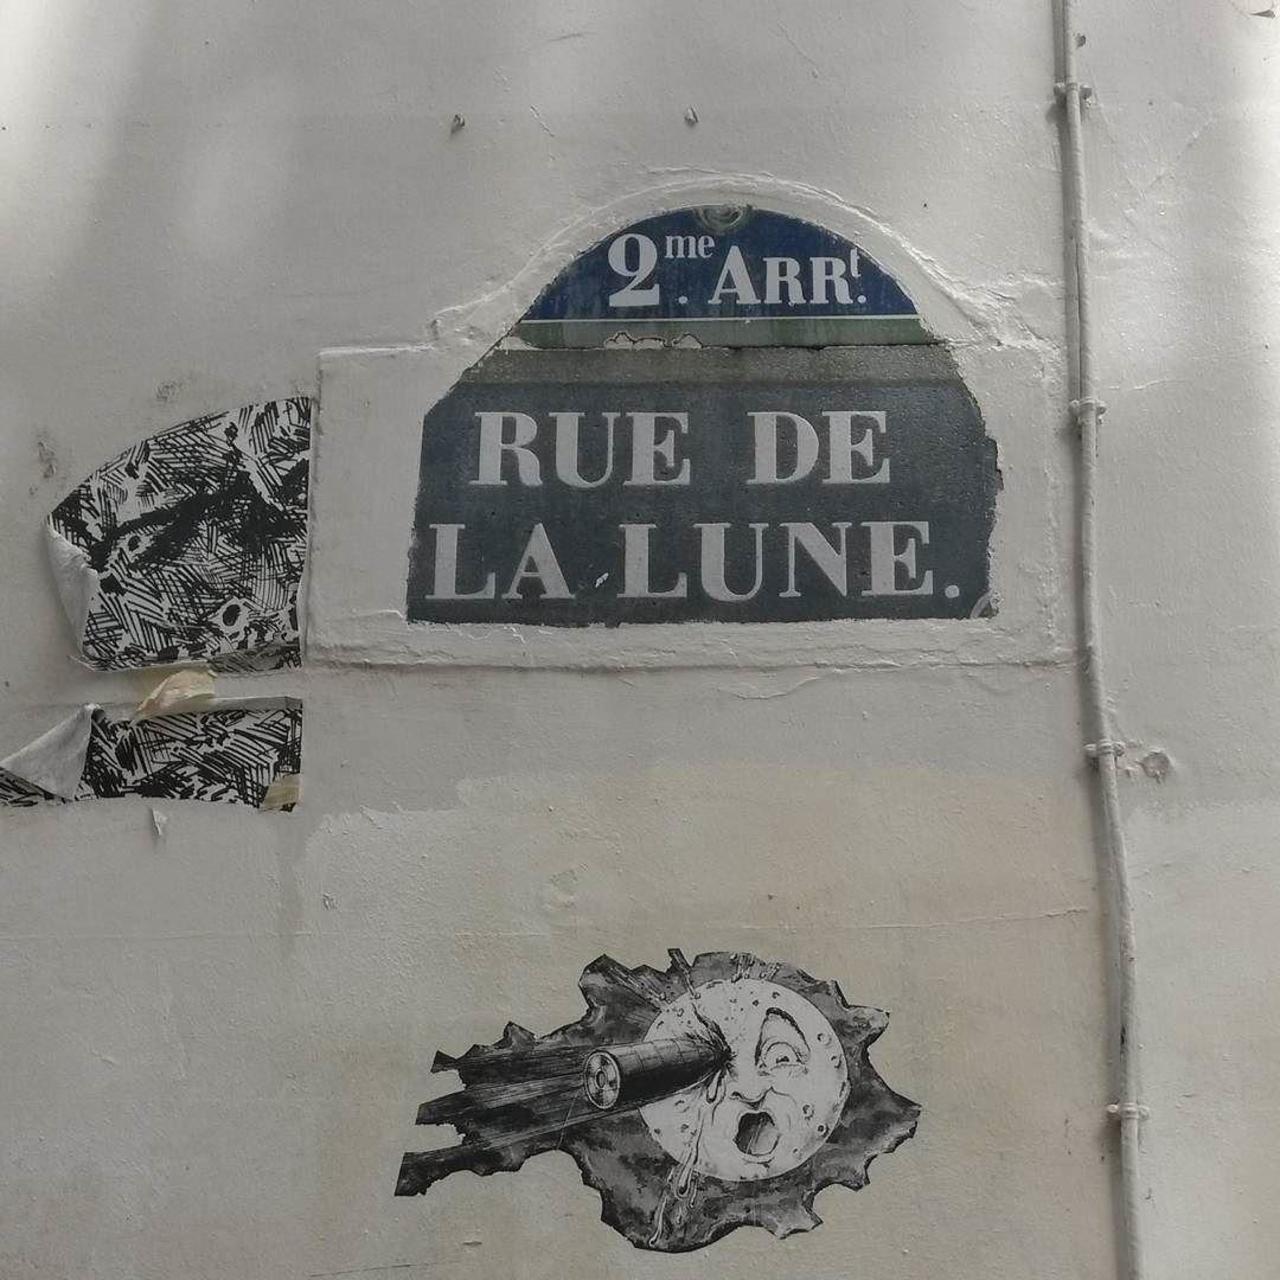 #Paris #graffiti photo by @le_cyclopede http://ift.tt/1QaTT4g #StreetArt http://t.co/IZABrQSIzD